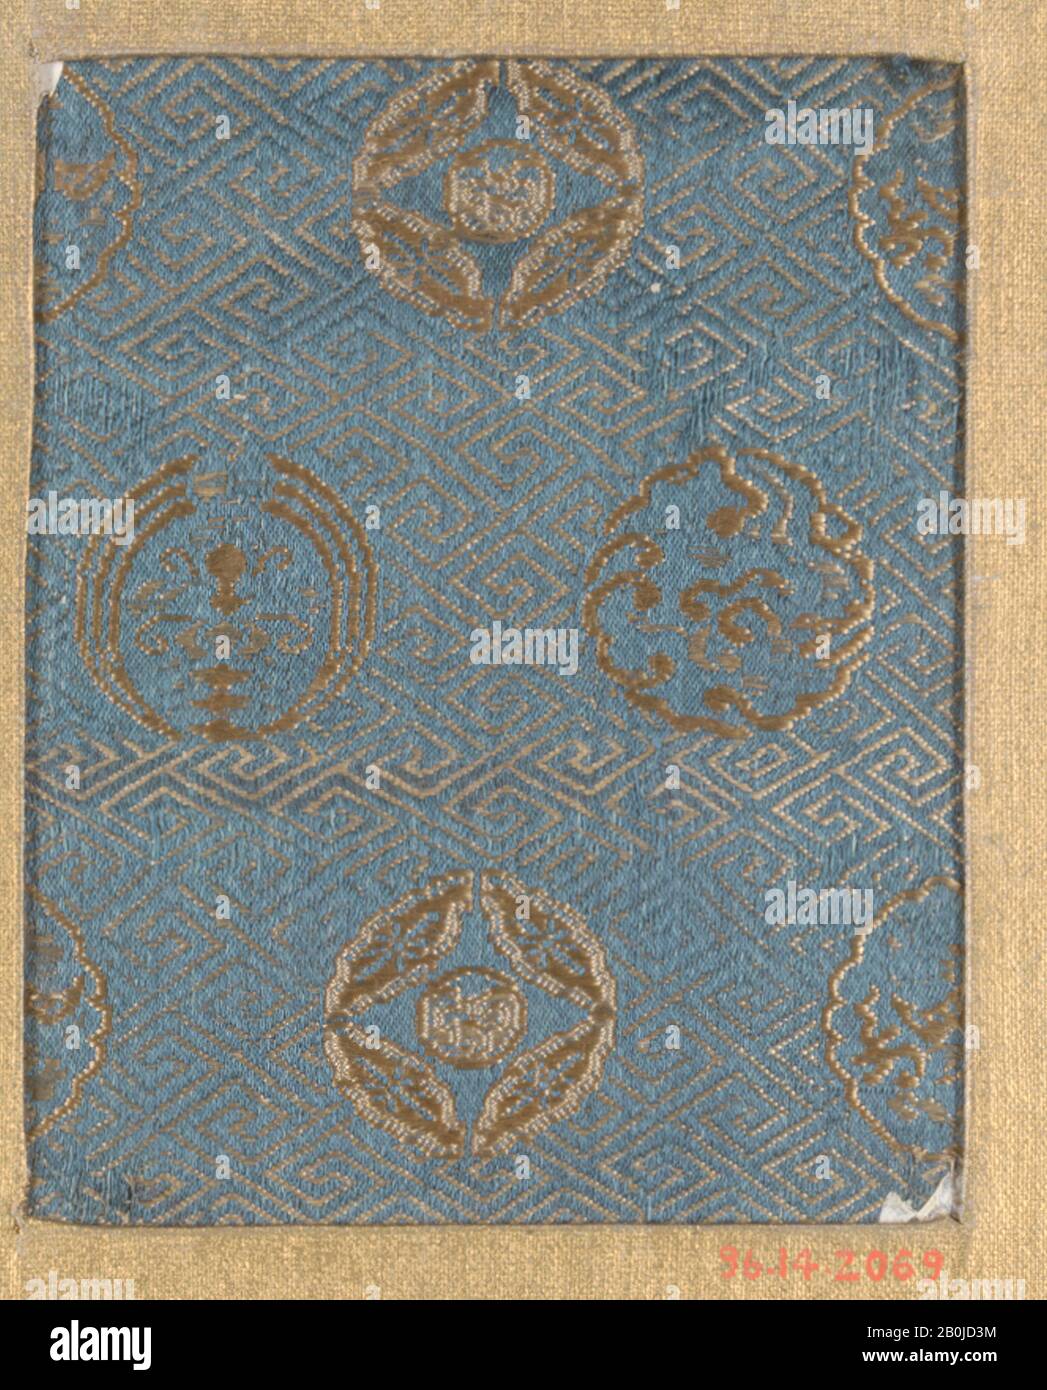 Pièce, Japon, XVIIIe–XIXe siècle, Japon, soie, 4 x 3 1/4 po. (10,16 x 8,26 cm), textiles-tissés Banque D'Images